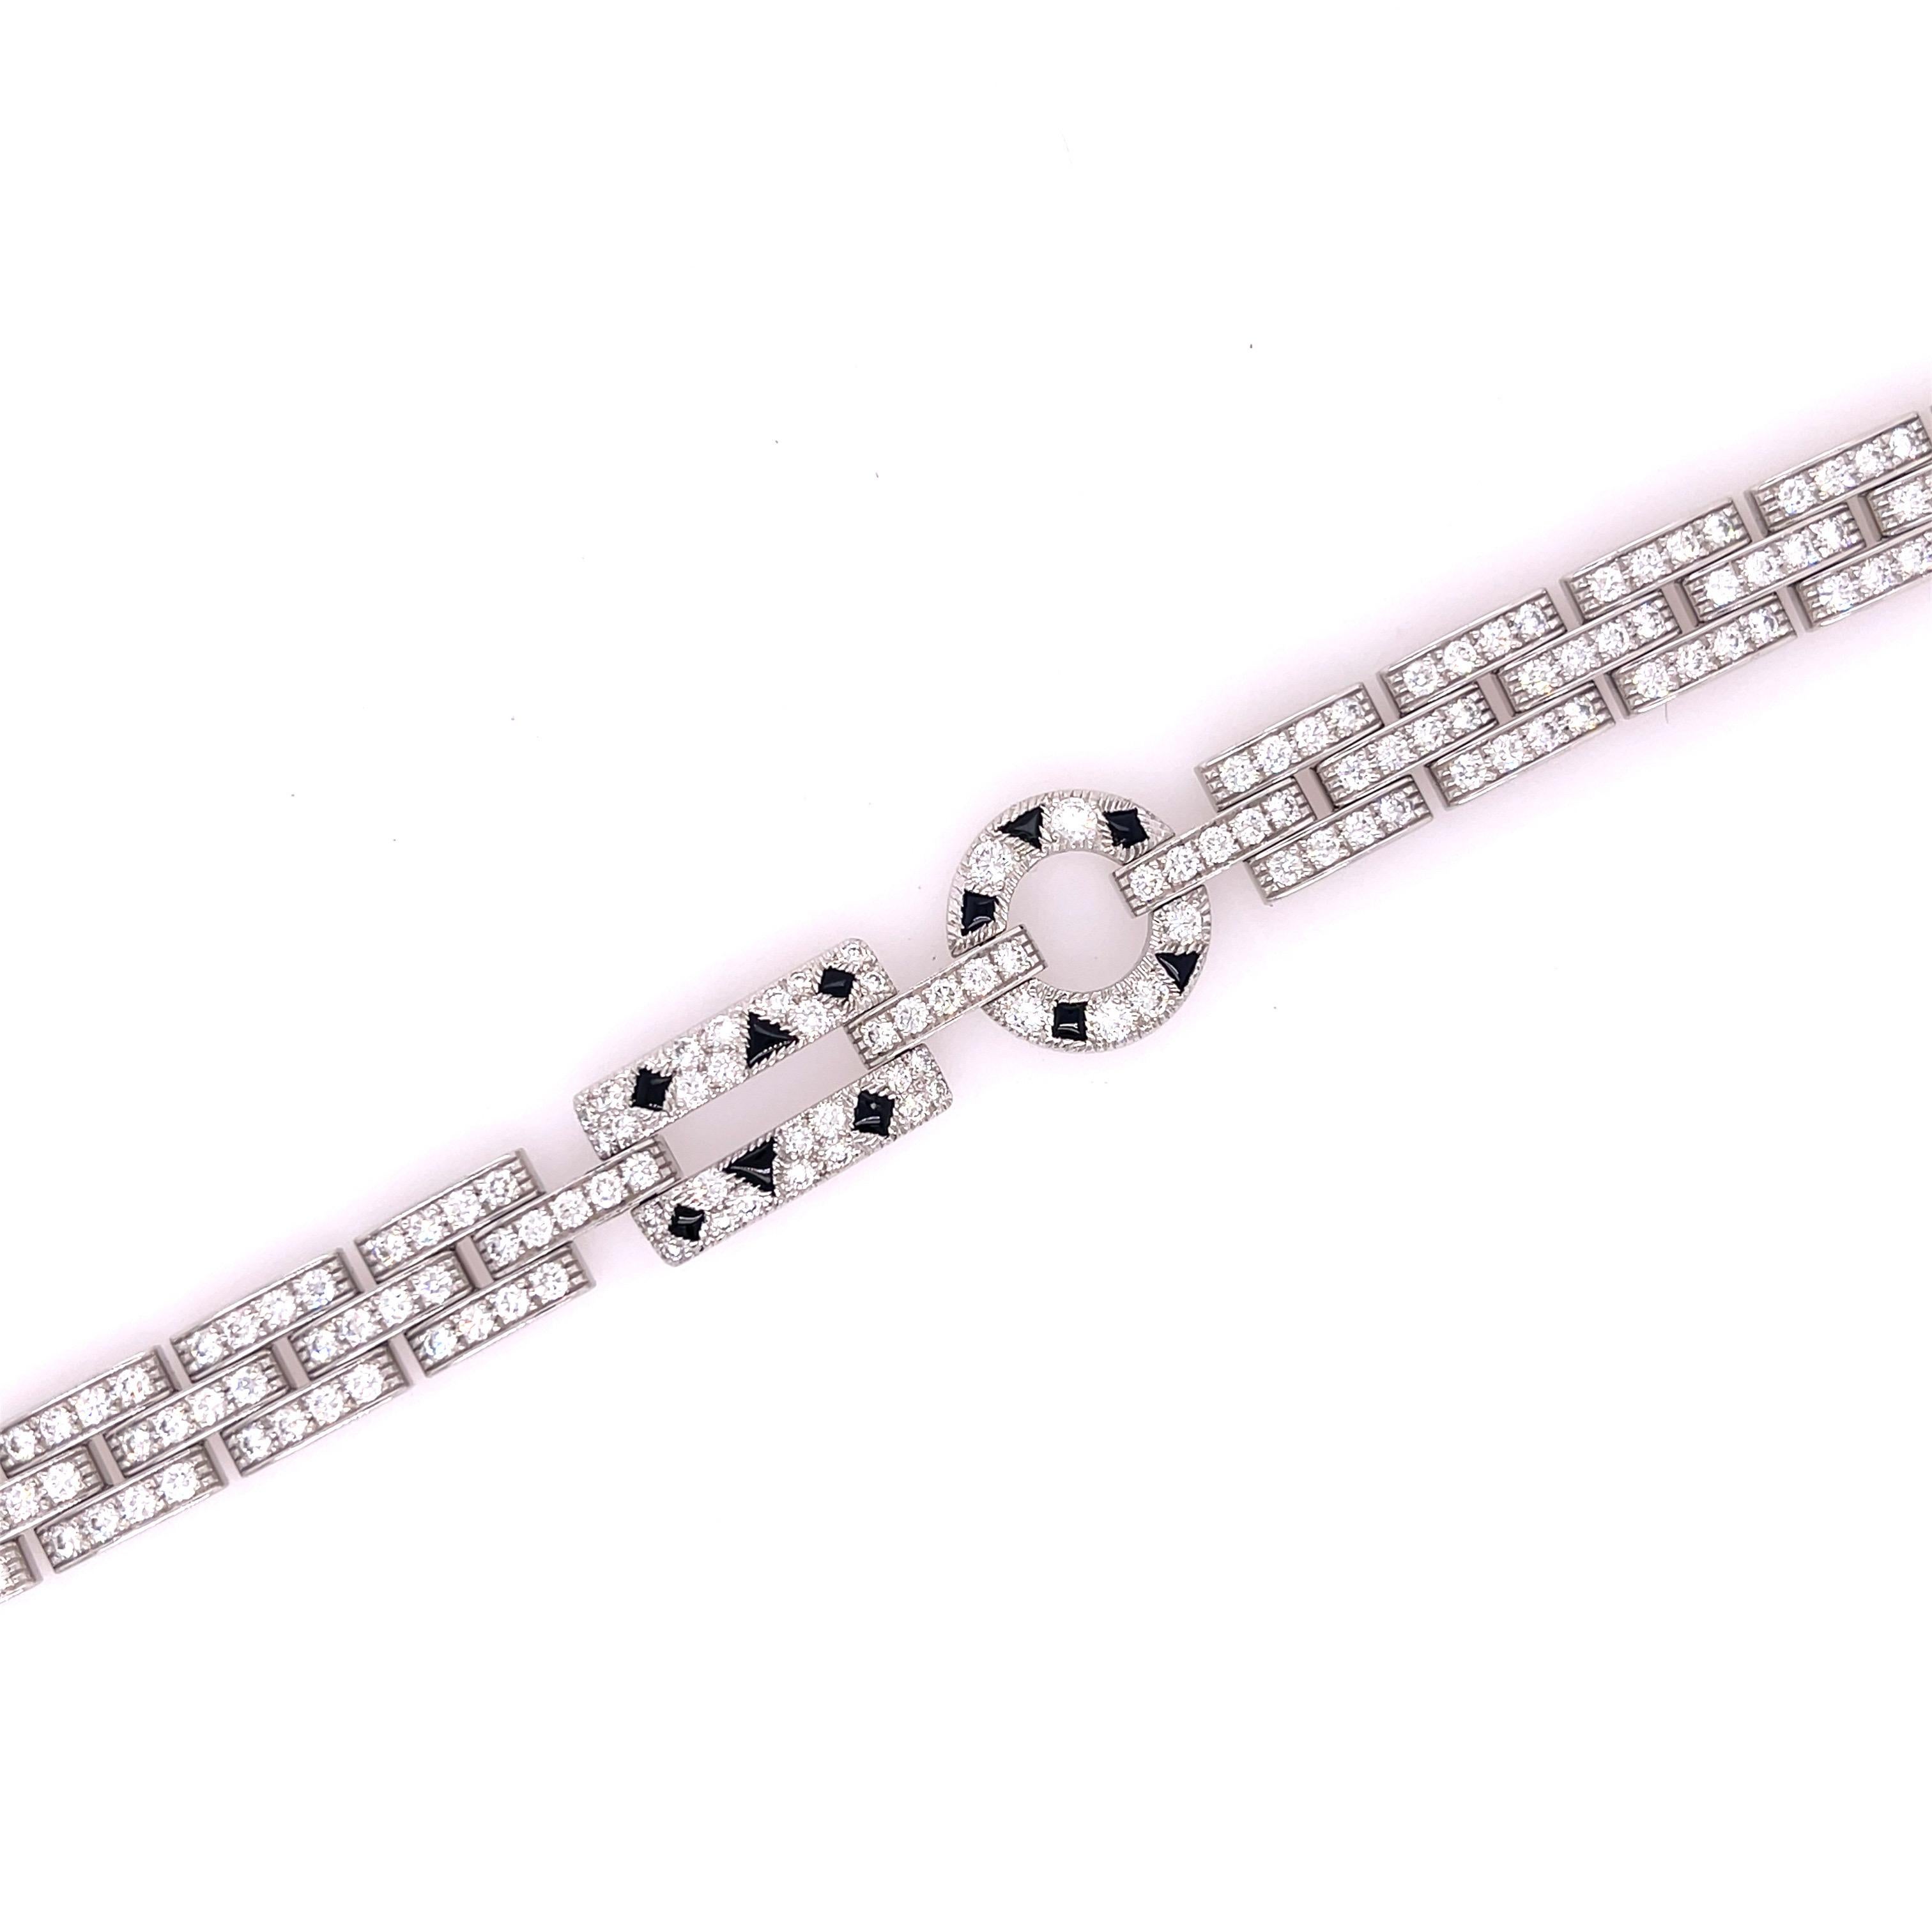 Bracelet Panthère de Cartier en or blanc 18 carats, diamants et onyx. Le bracelet comporte environ 5,90ctw de diamants ronds de taille brillante.
7